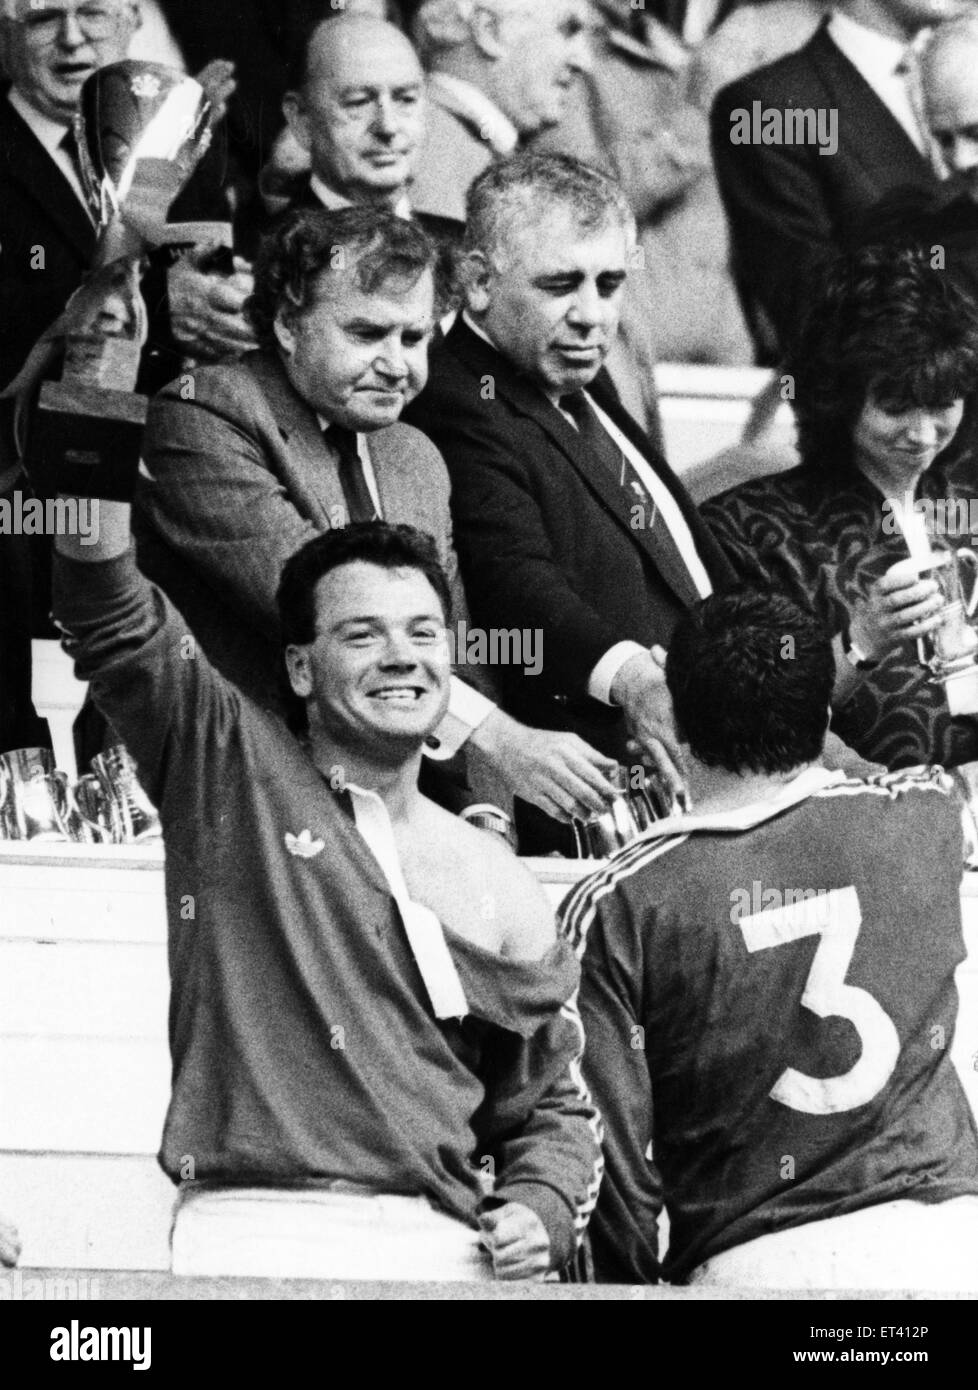 Welsh Rugby Union finale - Llanelli 28 - 13 Neath. Scarlet provare star Ieuan Evans solleva la Schweppes Cup dopo il suo lato beat Neath e il suolo nazionale. Il 7 maggio 1988. Foto Stock